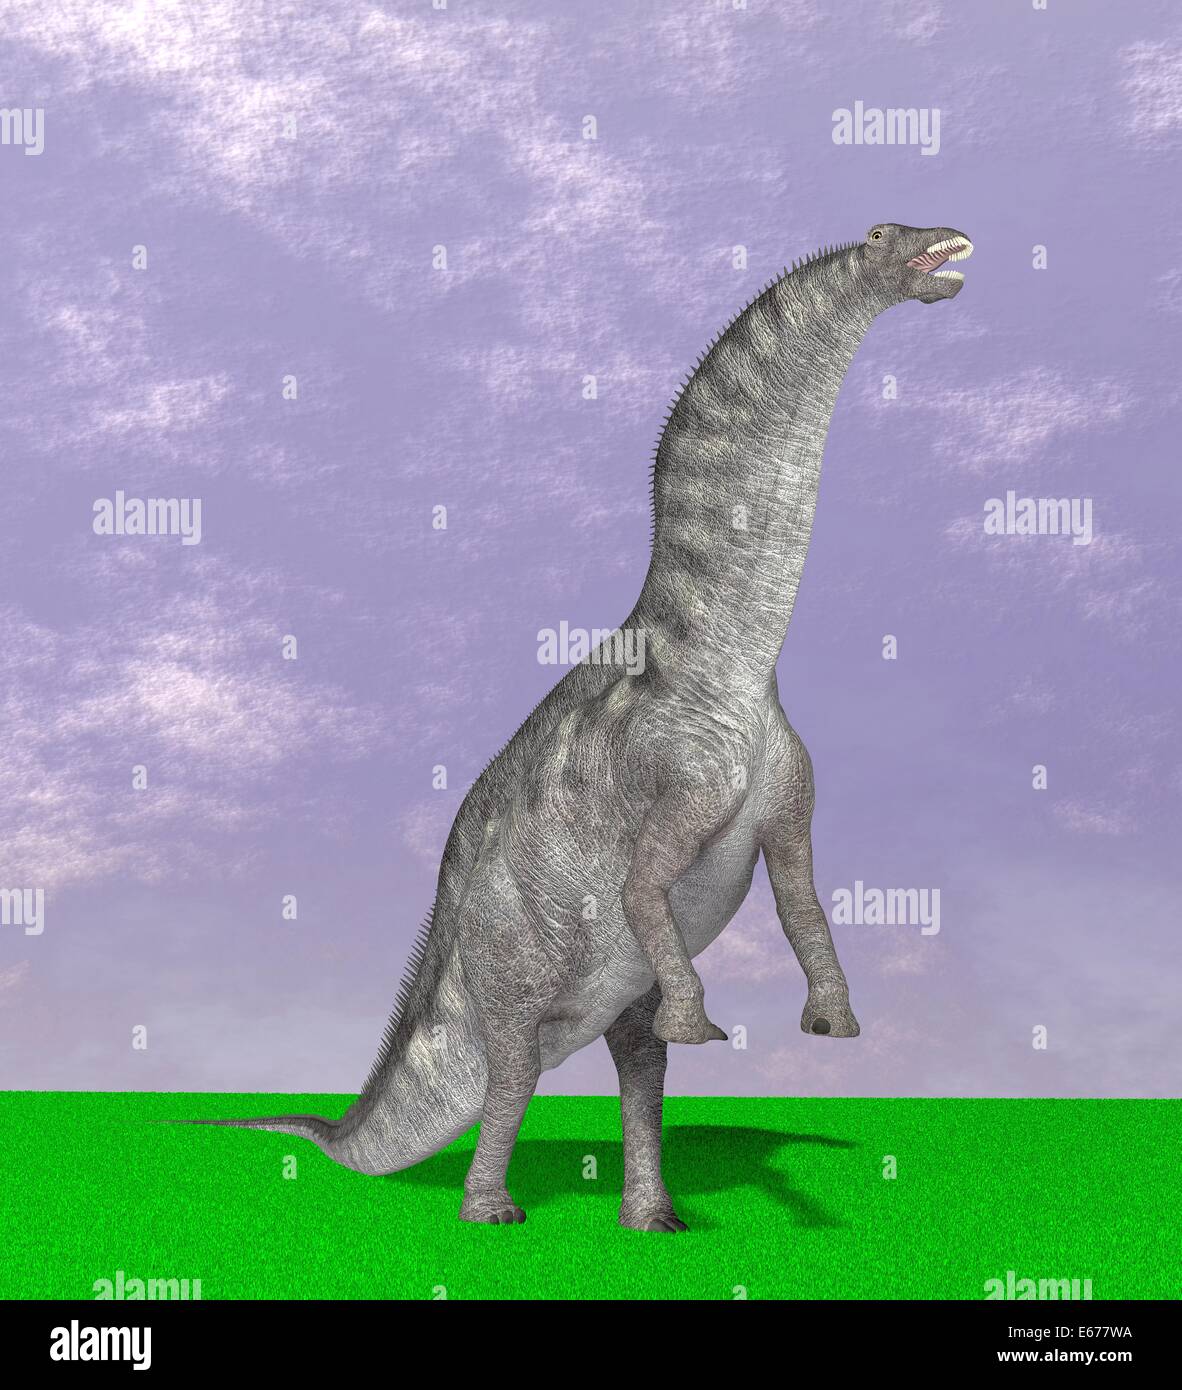 Dinosaurier Amargasaurus / Amargasaurus dinosauro Foto Stock